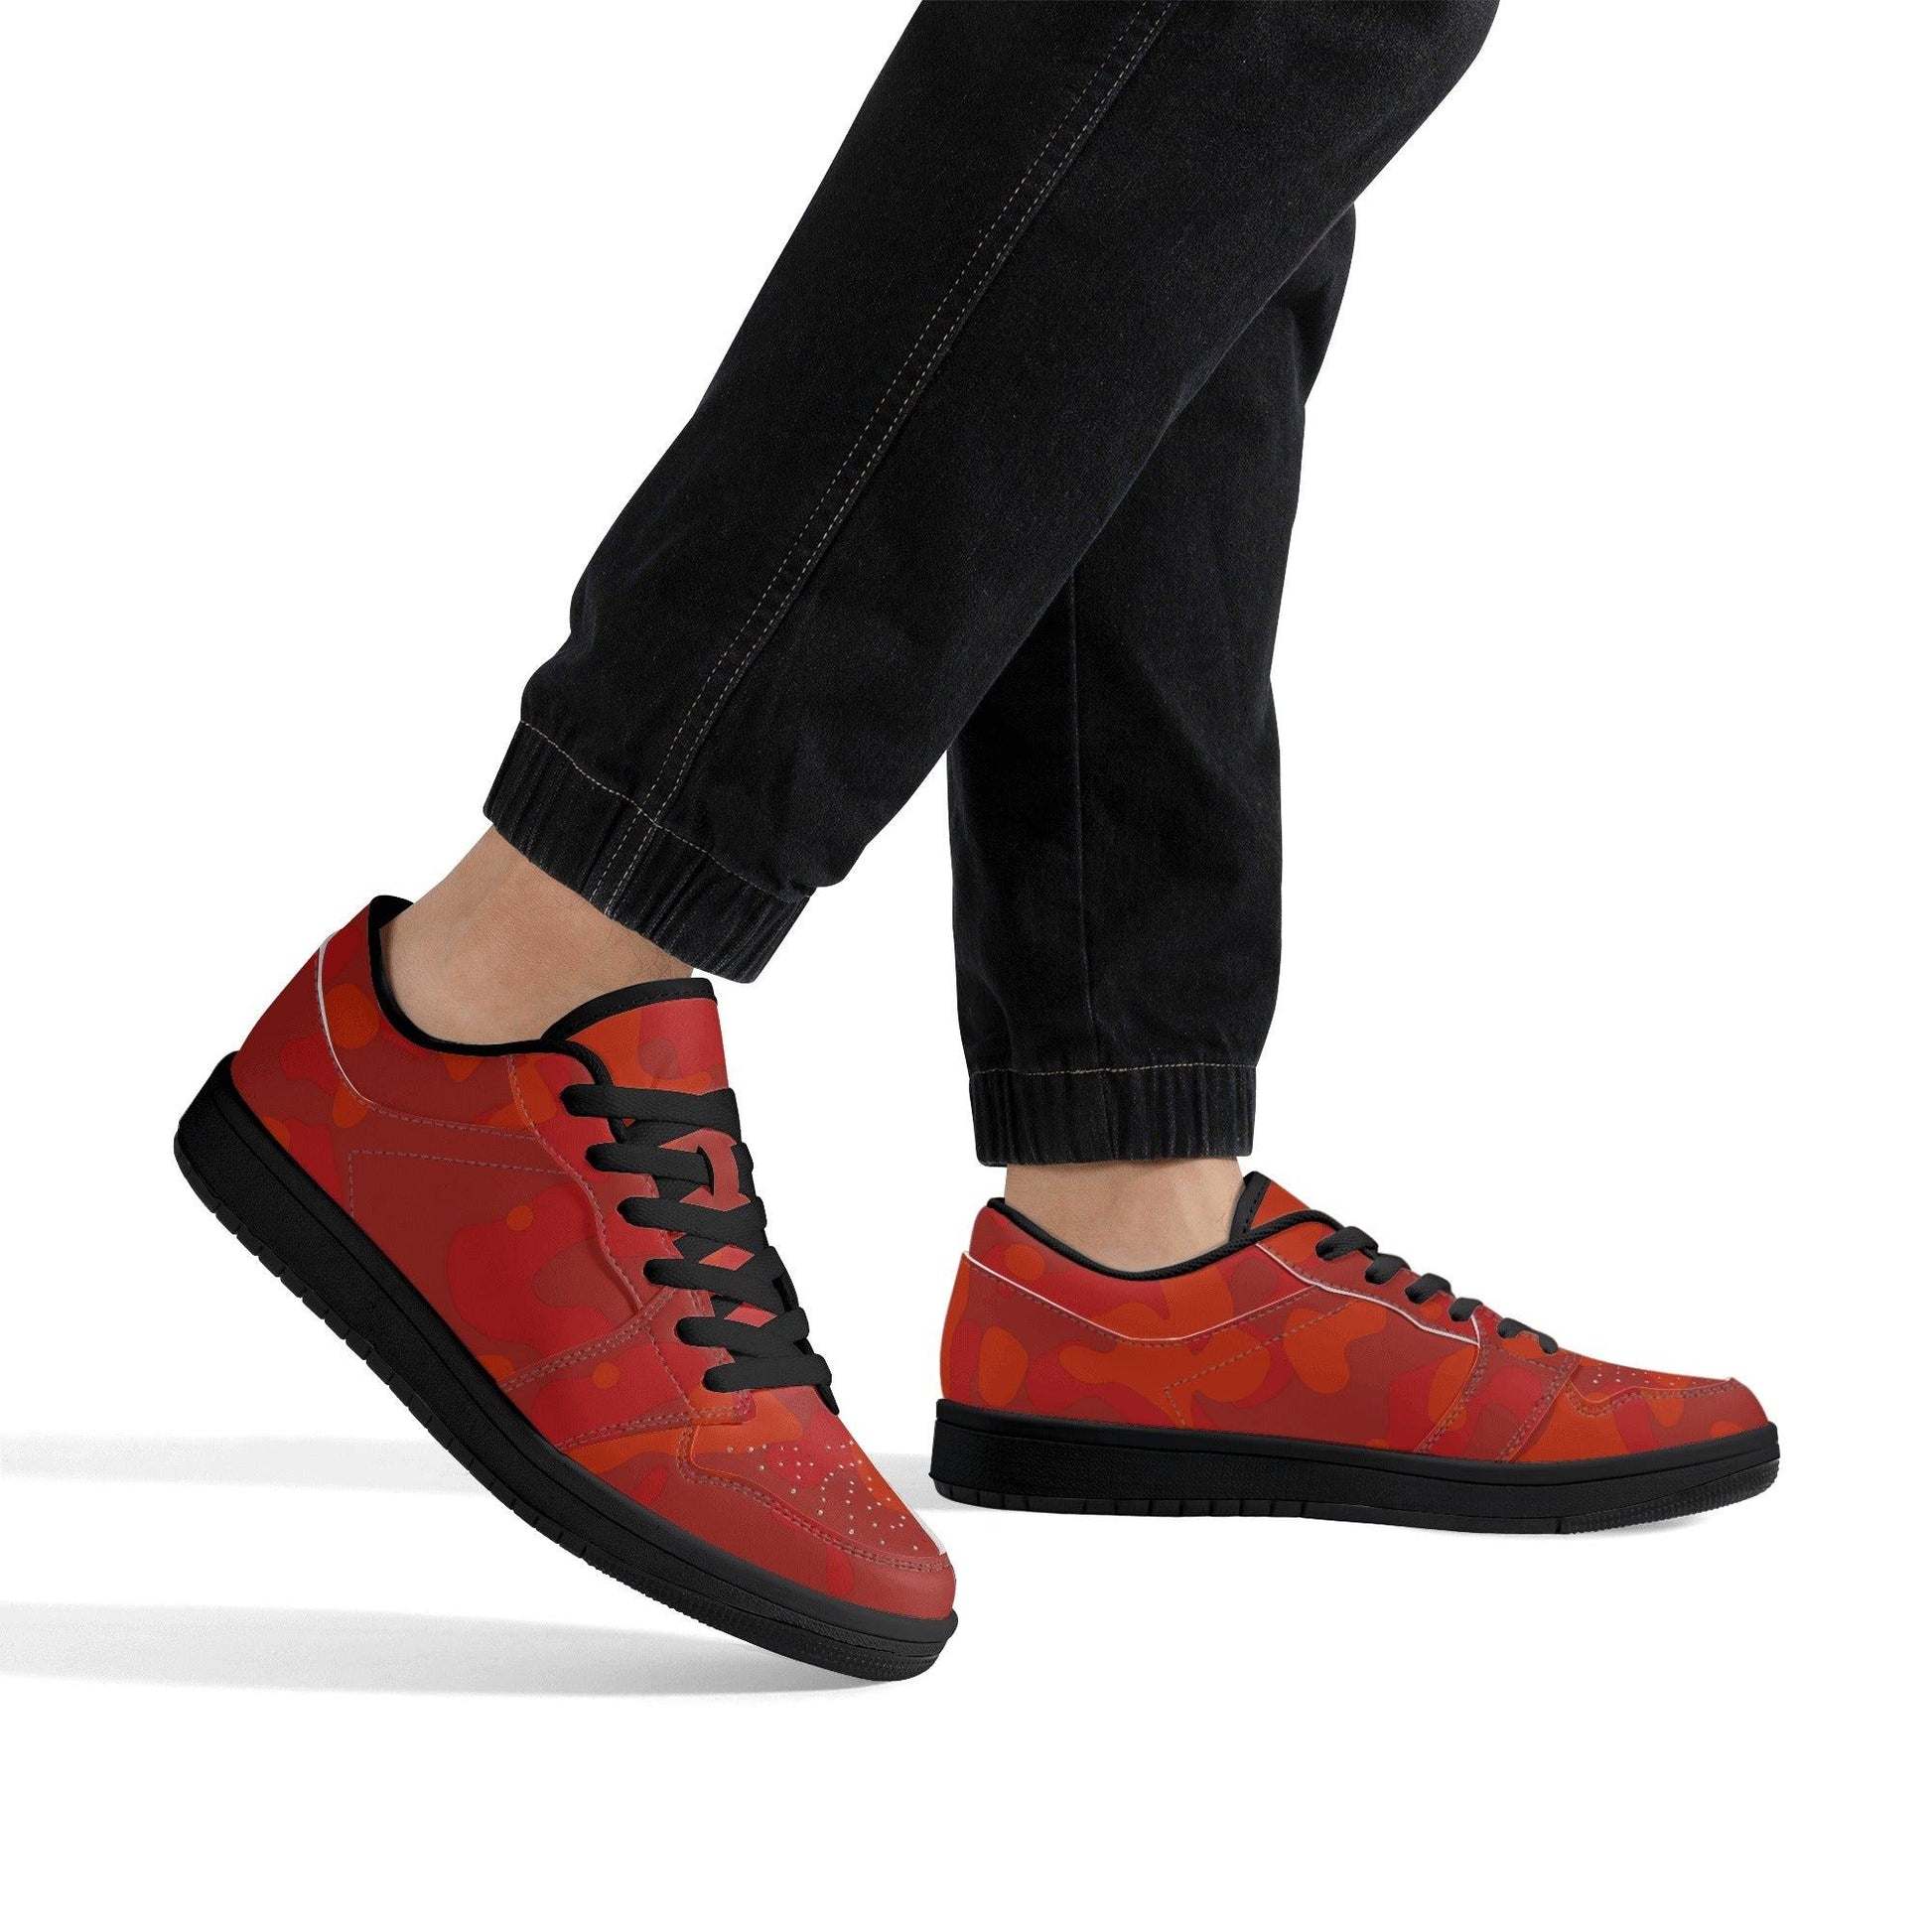 Red Camouflage Low Top Sneaker für Herren Low Top Sneaker 79.99 JLR Design